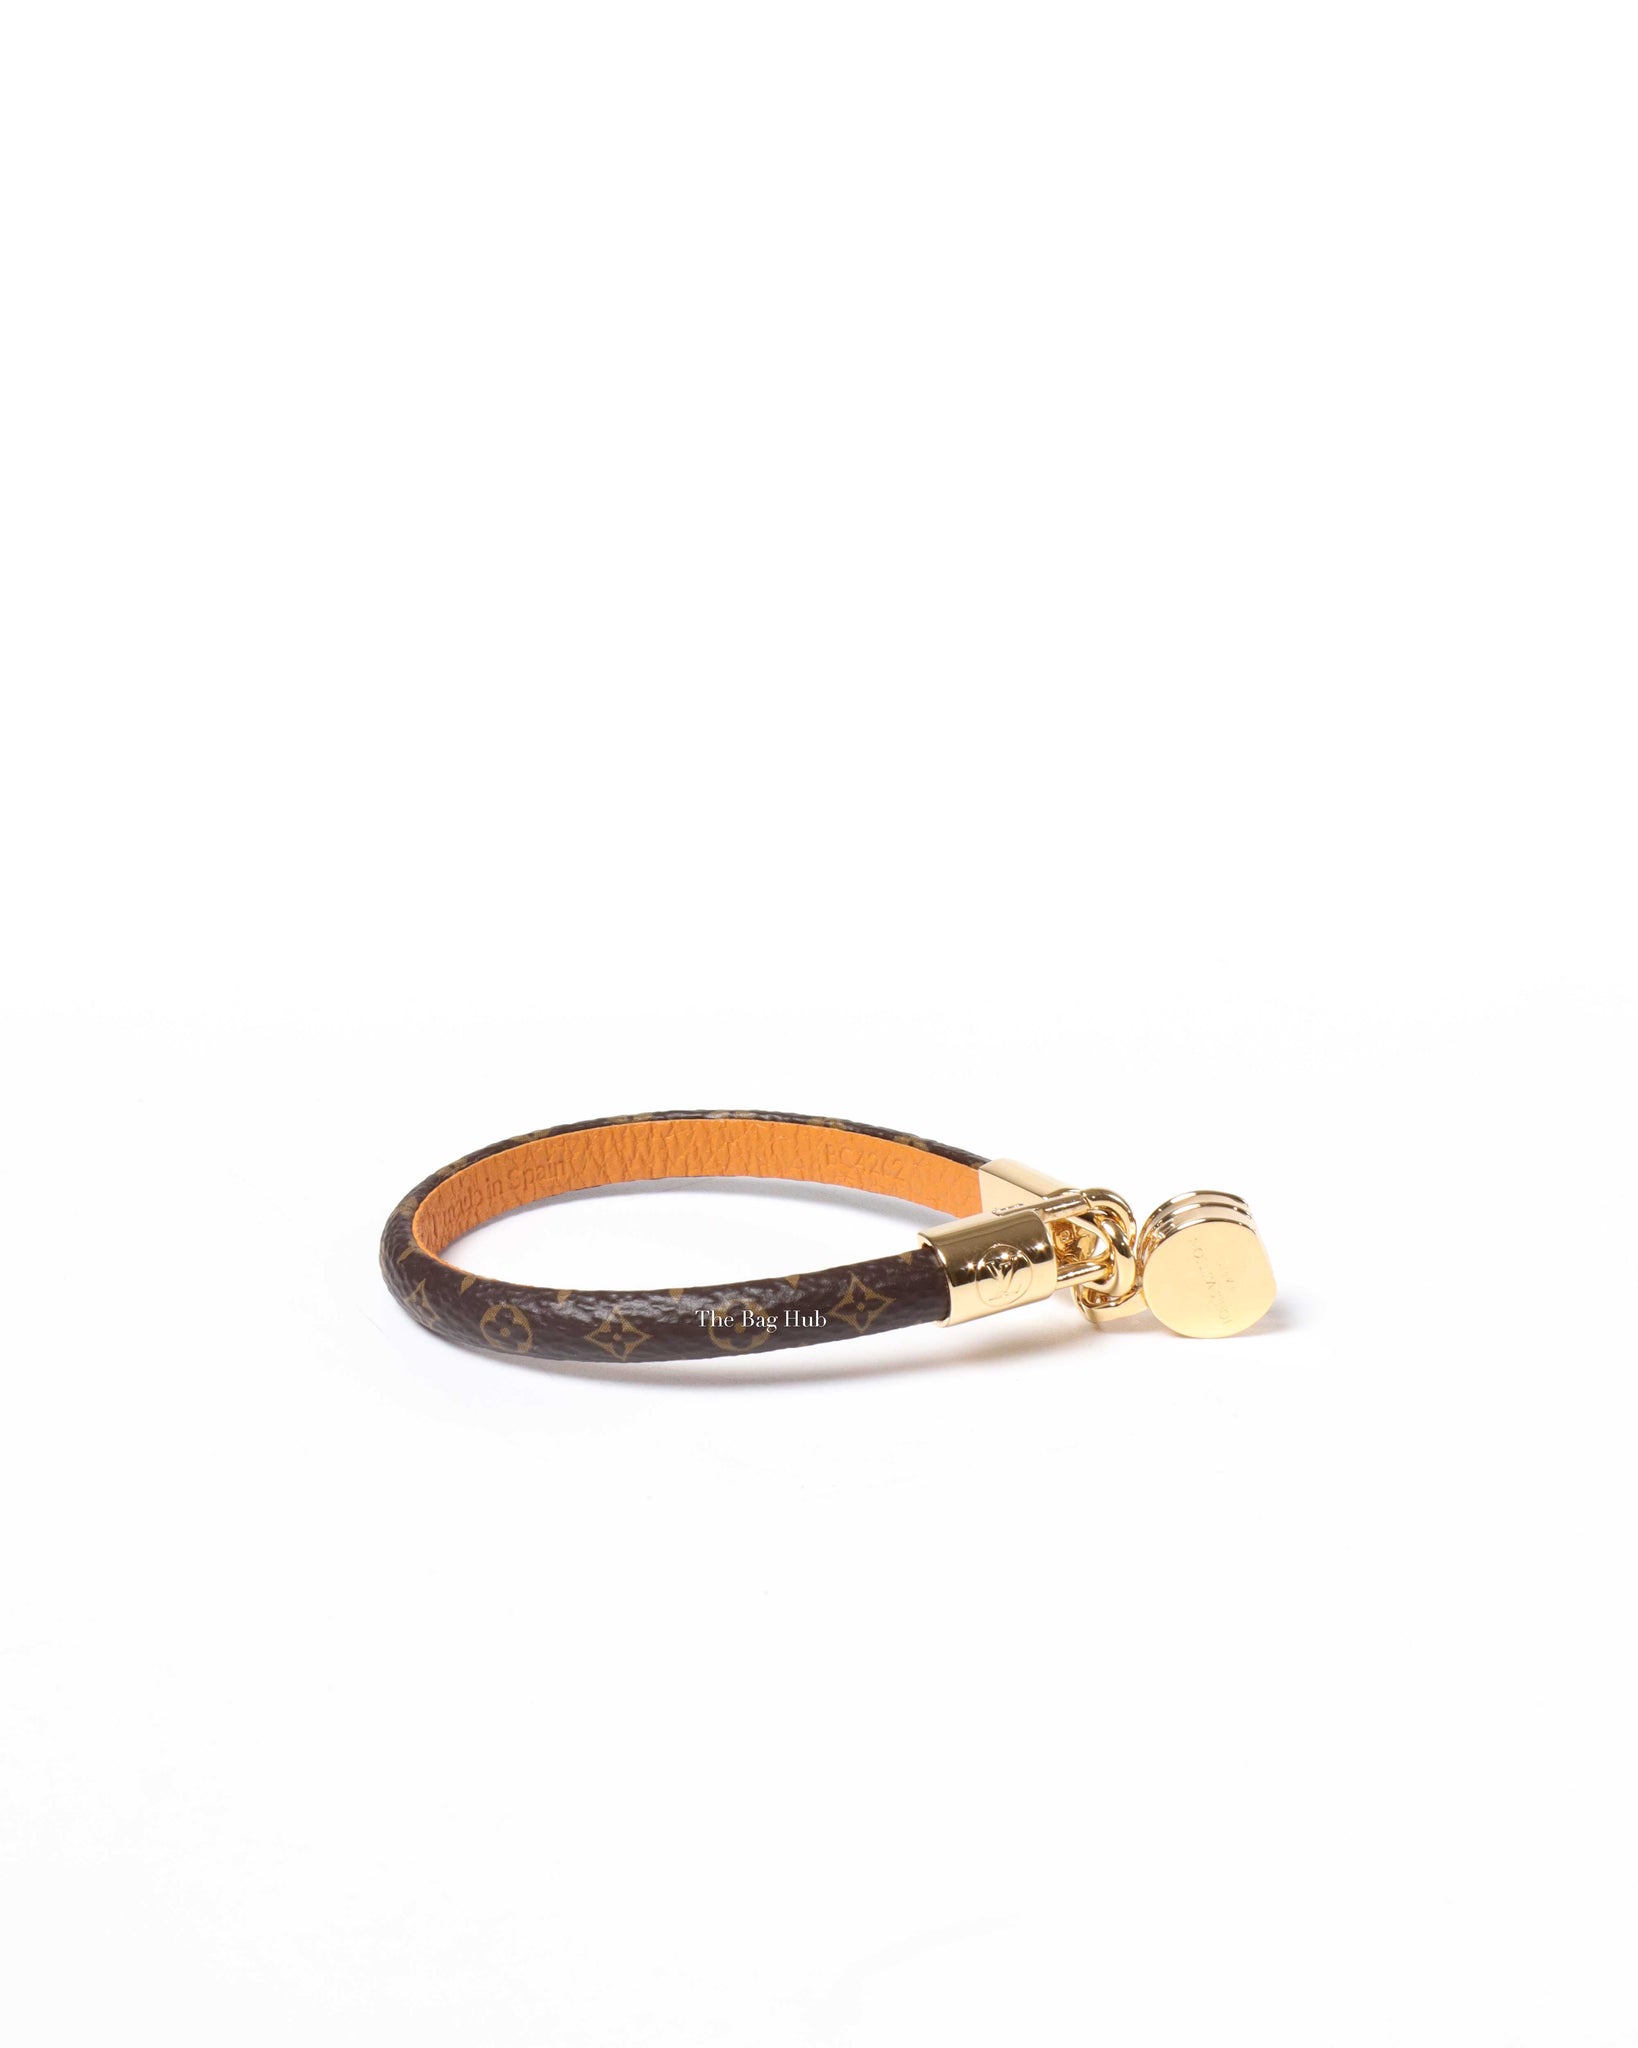 Louis Vuitton Monogram Tribute Bracelet Size 17, Designer Brand, Authentic Louis Vuitton